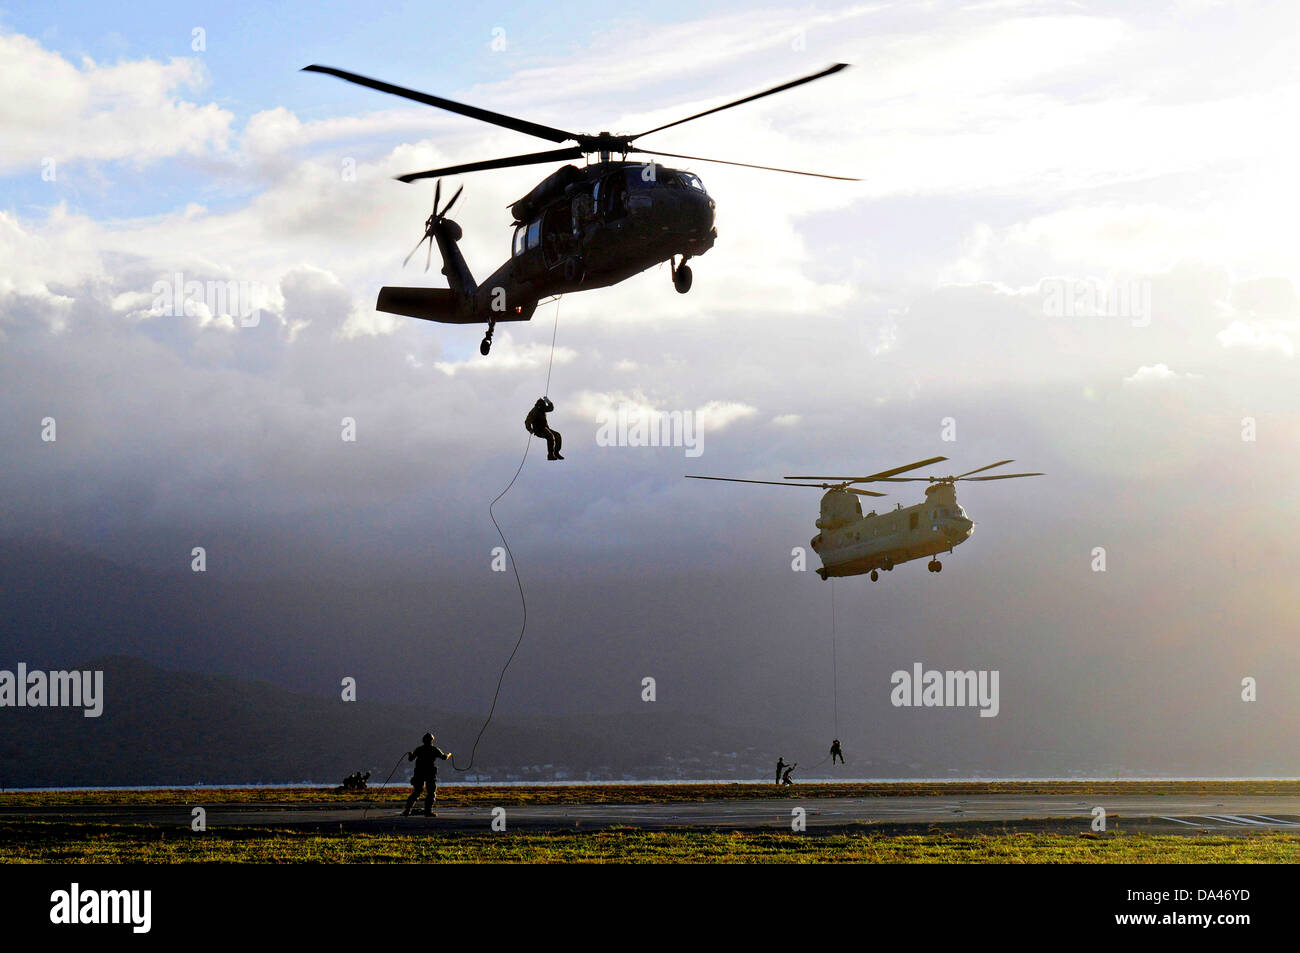 US Navy SEAL i membri del team rappel dalla speciale pattuglia di inserimento e di estrazione corda attaccata ad un UH-60 Black Hawk elicottero ed un CH-47F elicottero Chinook durante la formazione HELOCAST al Marine Corps Air Station Kaneohe Bay il 19 giugno 2013 nelle Hawaii. Foto Stock